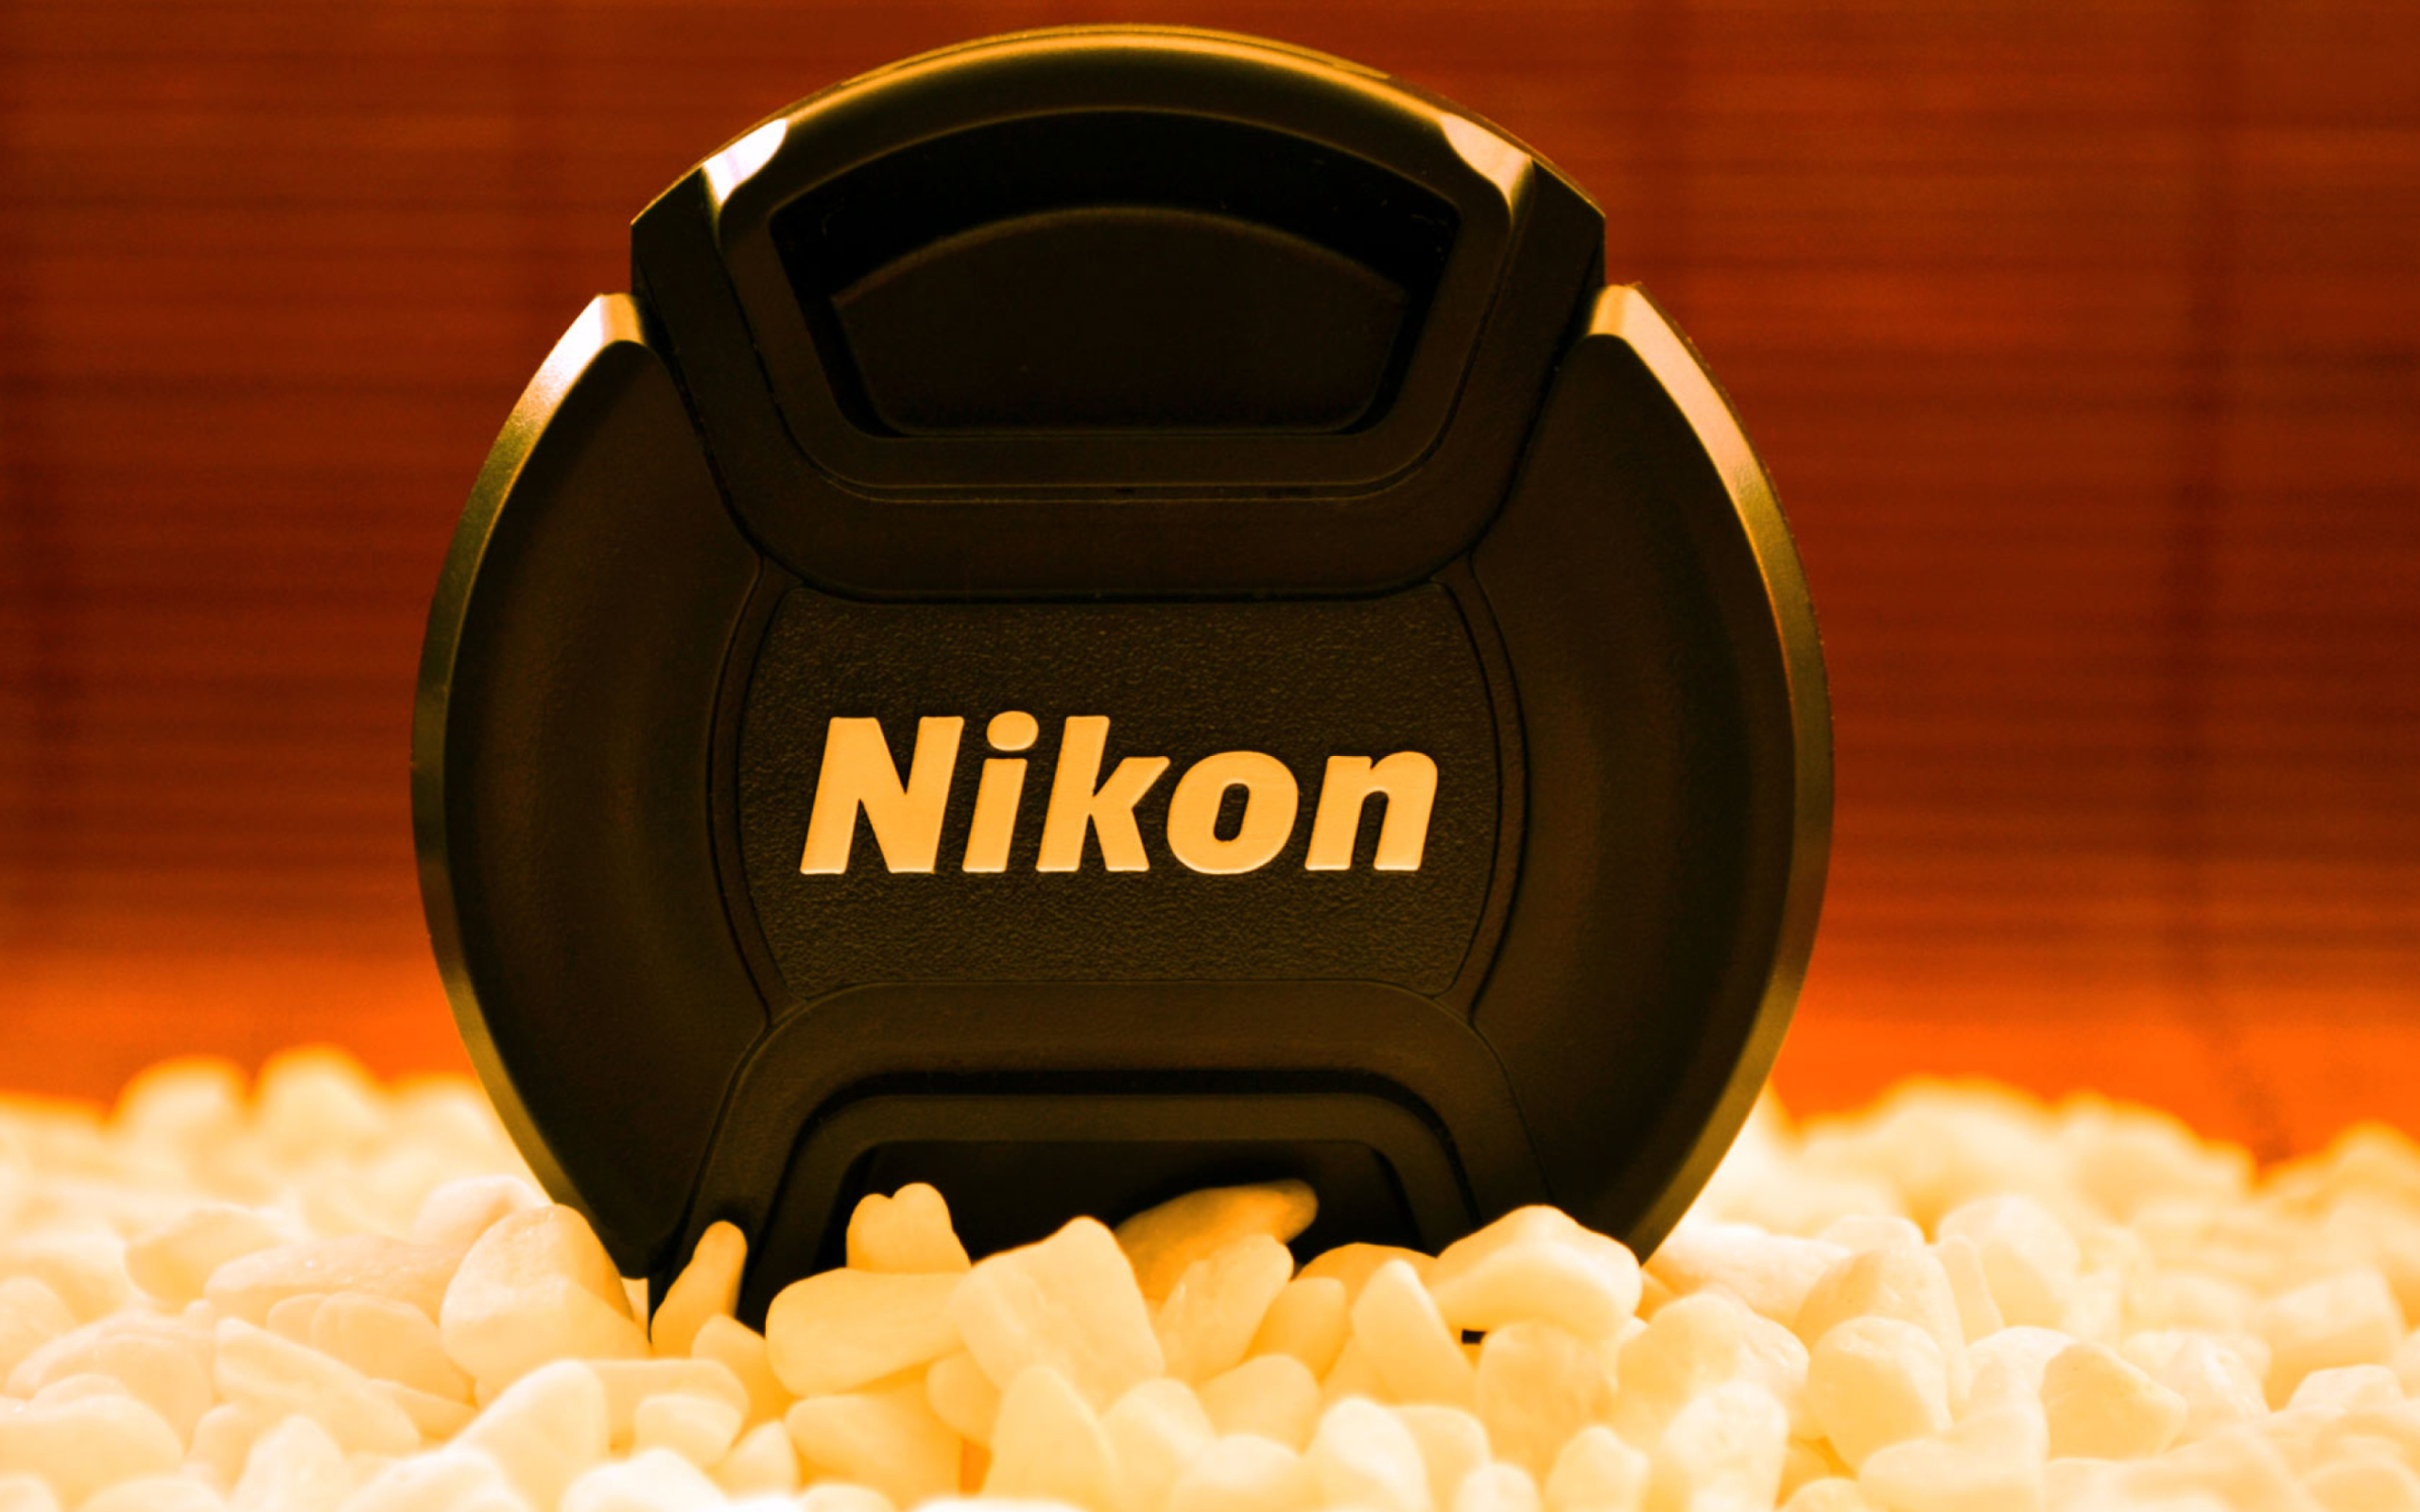 Nikon wallpaper 2560x1600